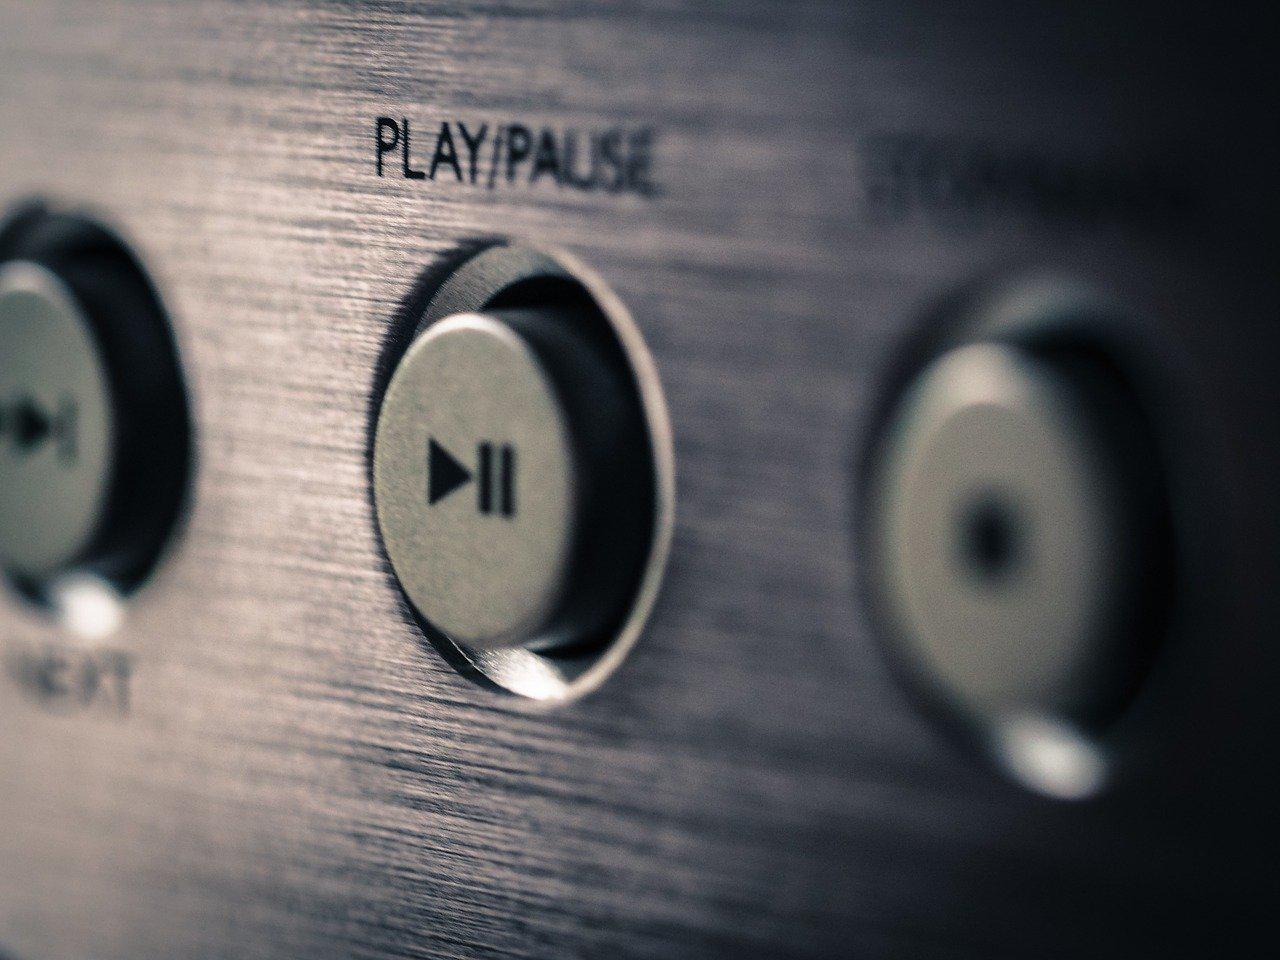 Francia dice que convertir el audio de YouTube a MP3 es legal